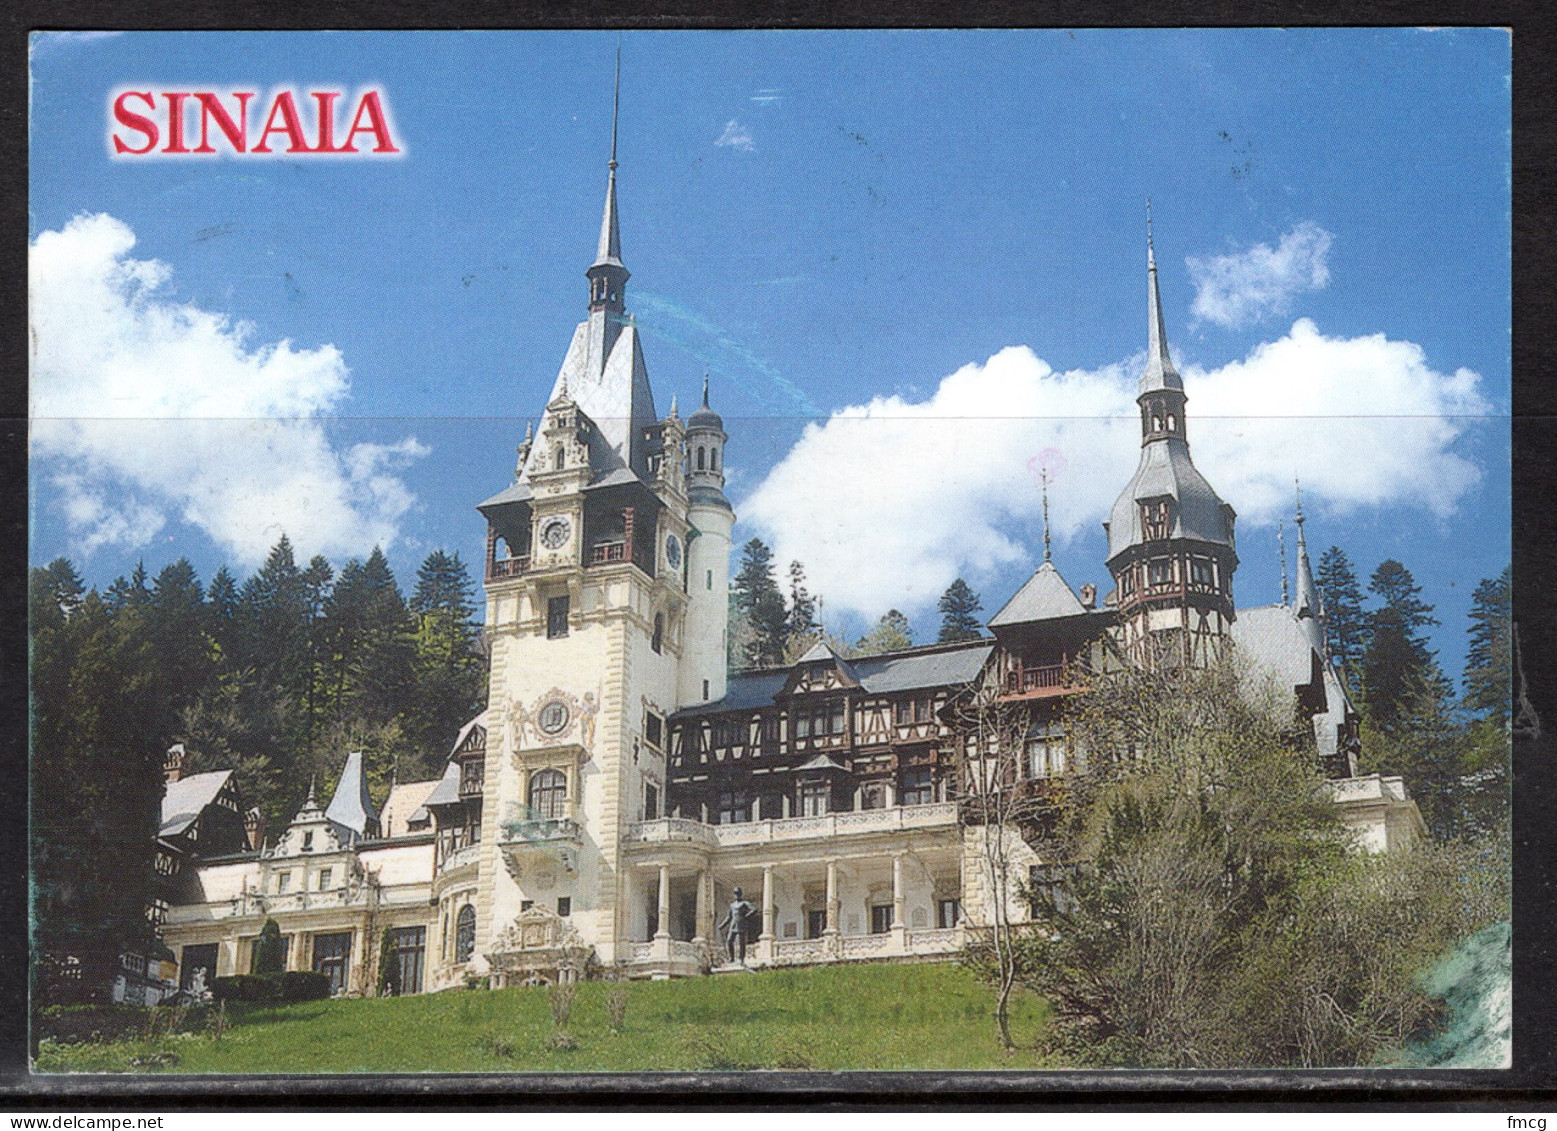 Sinaia, Peles Castle, Mailed To USA - Romania